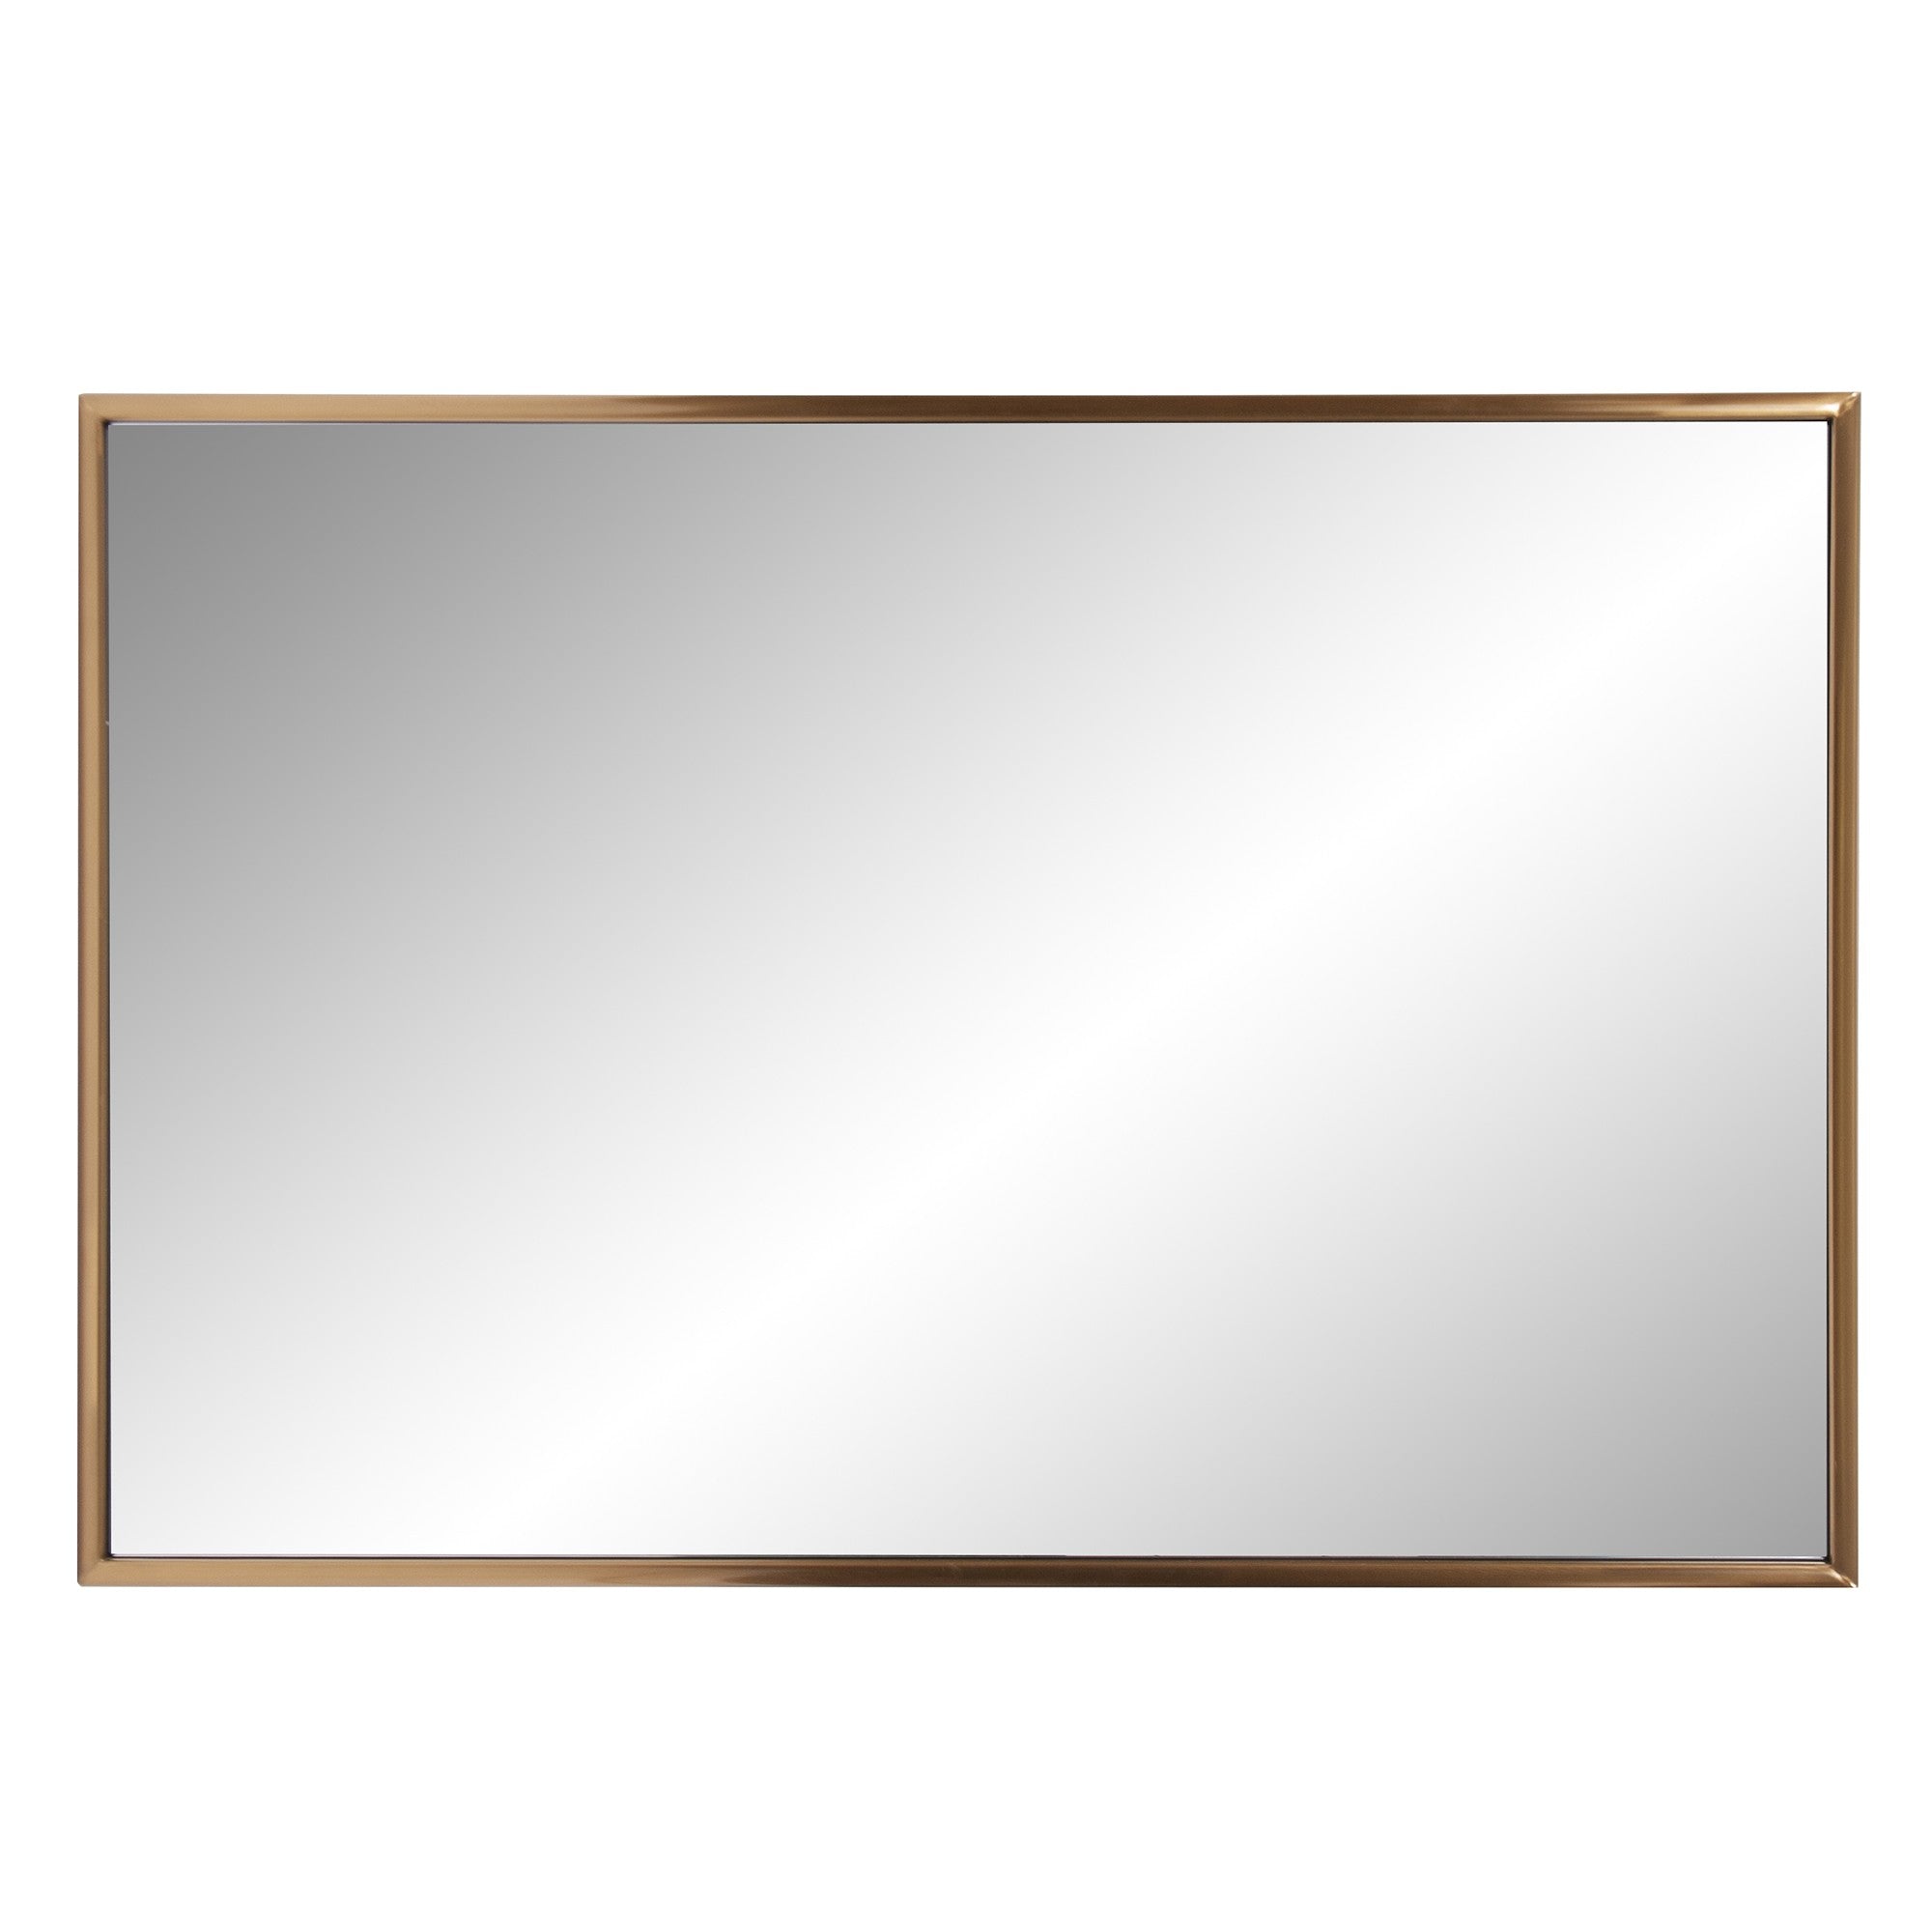 Antiqued Brushed Brass Rectangular Wall Mirror | 24